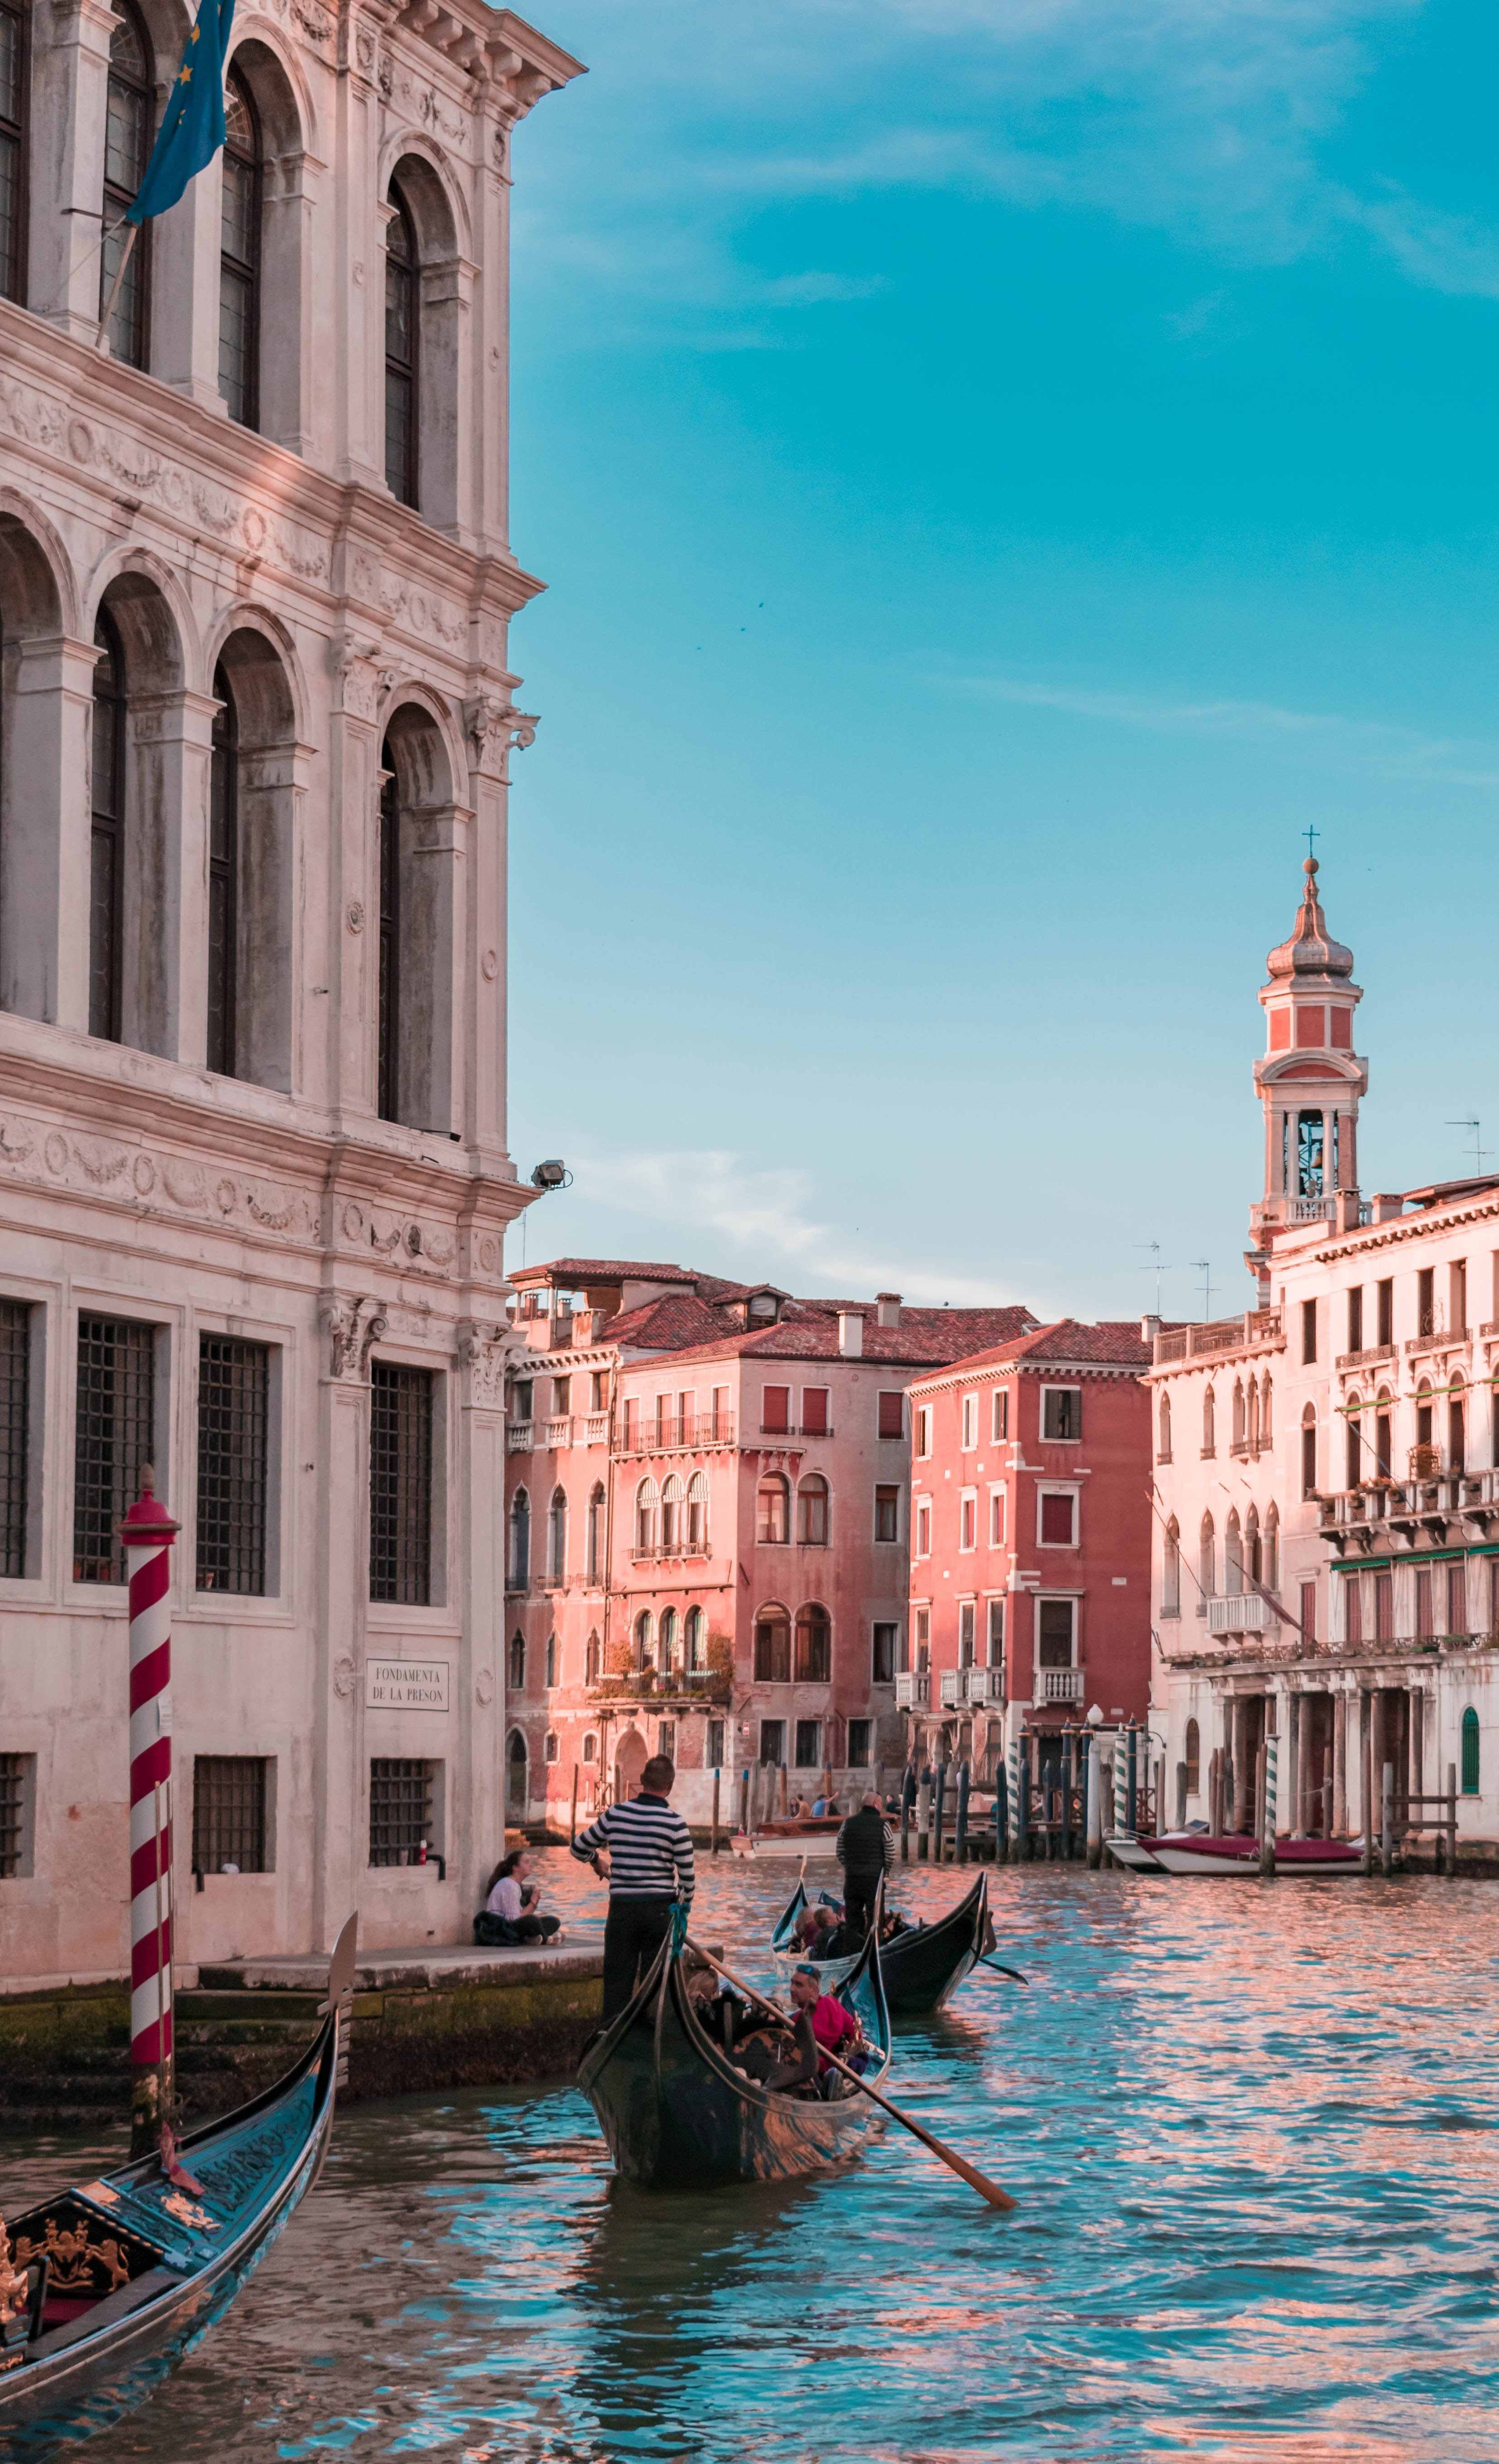 Si quieres visitar Venecia tendrás que pagar 5 euros a partir del año que viene